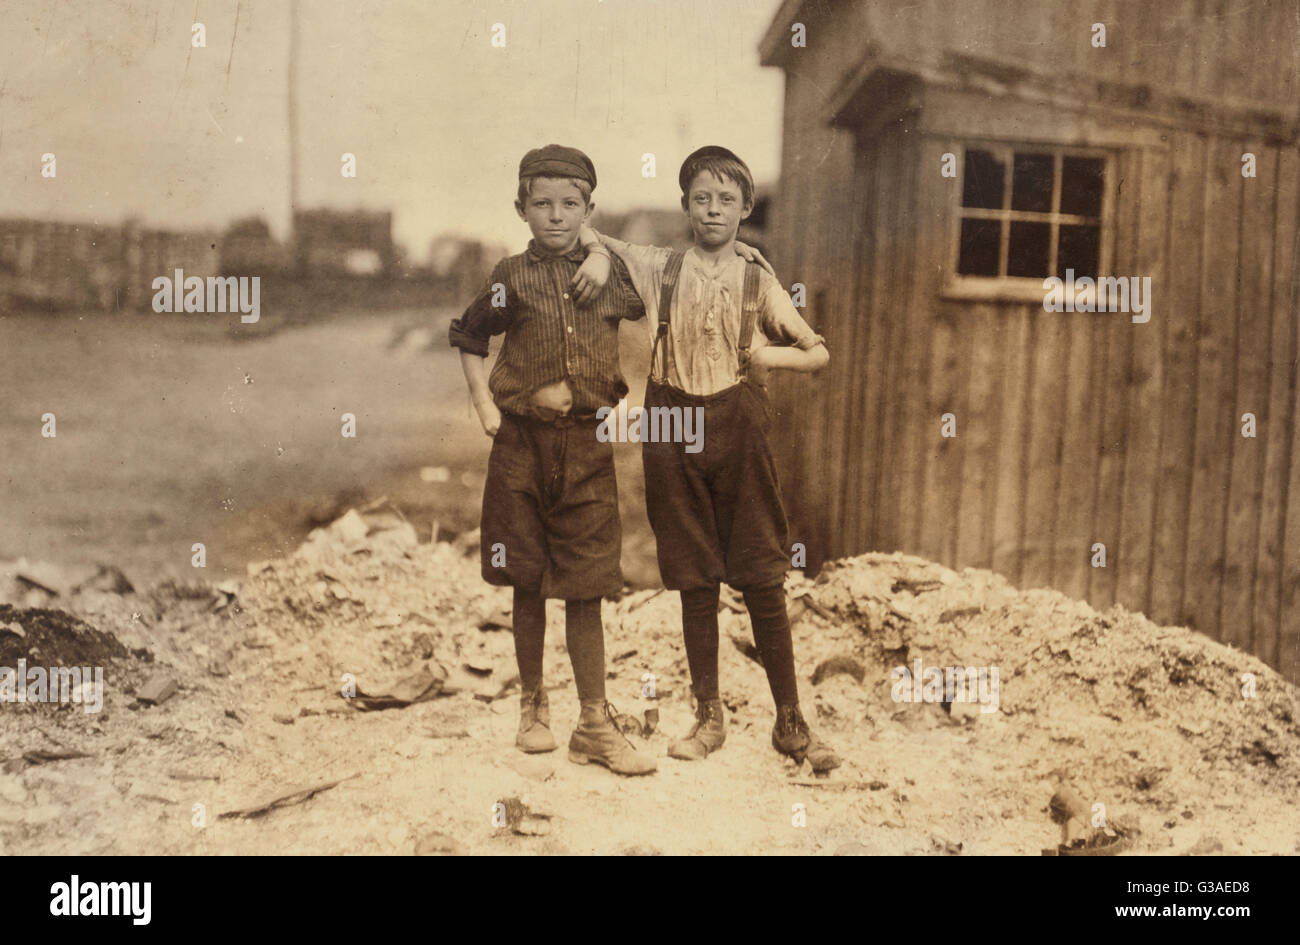 Deux jeunes garçons à Alexandrie (Virginie) Usine de verre Banque D'Images